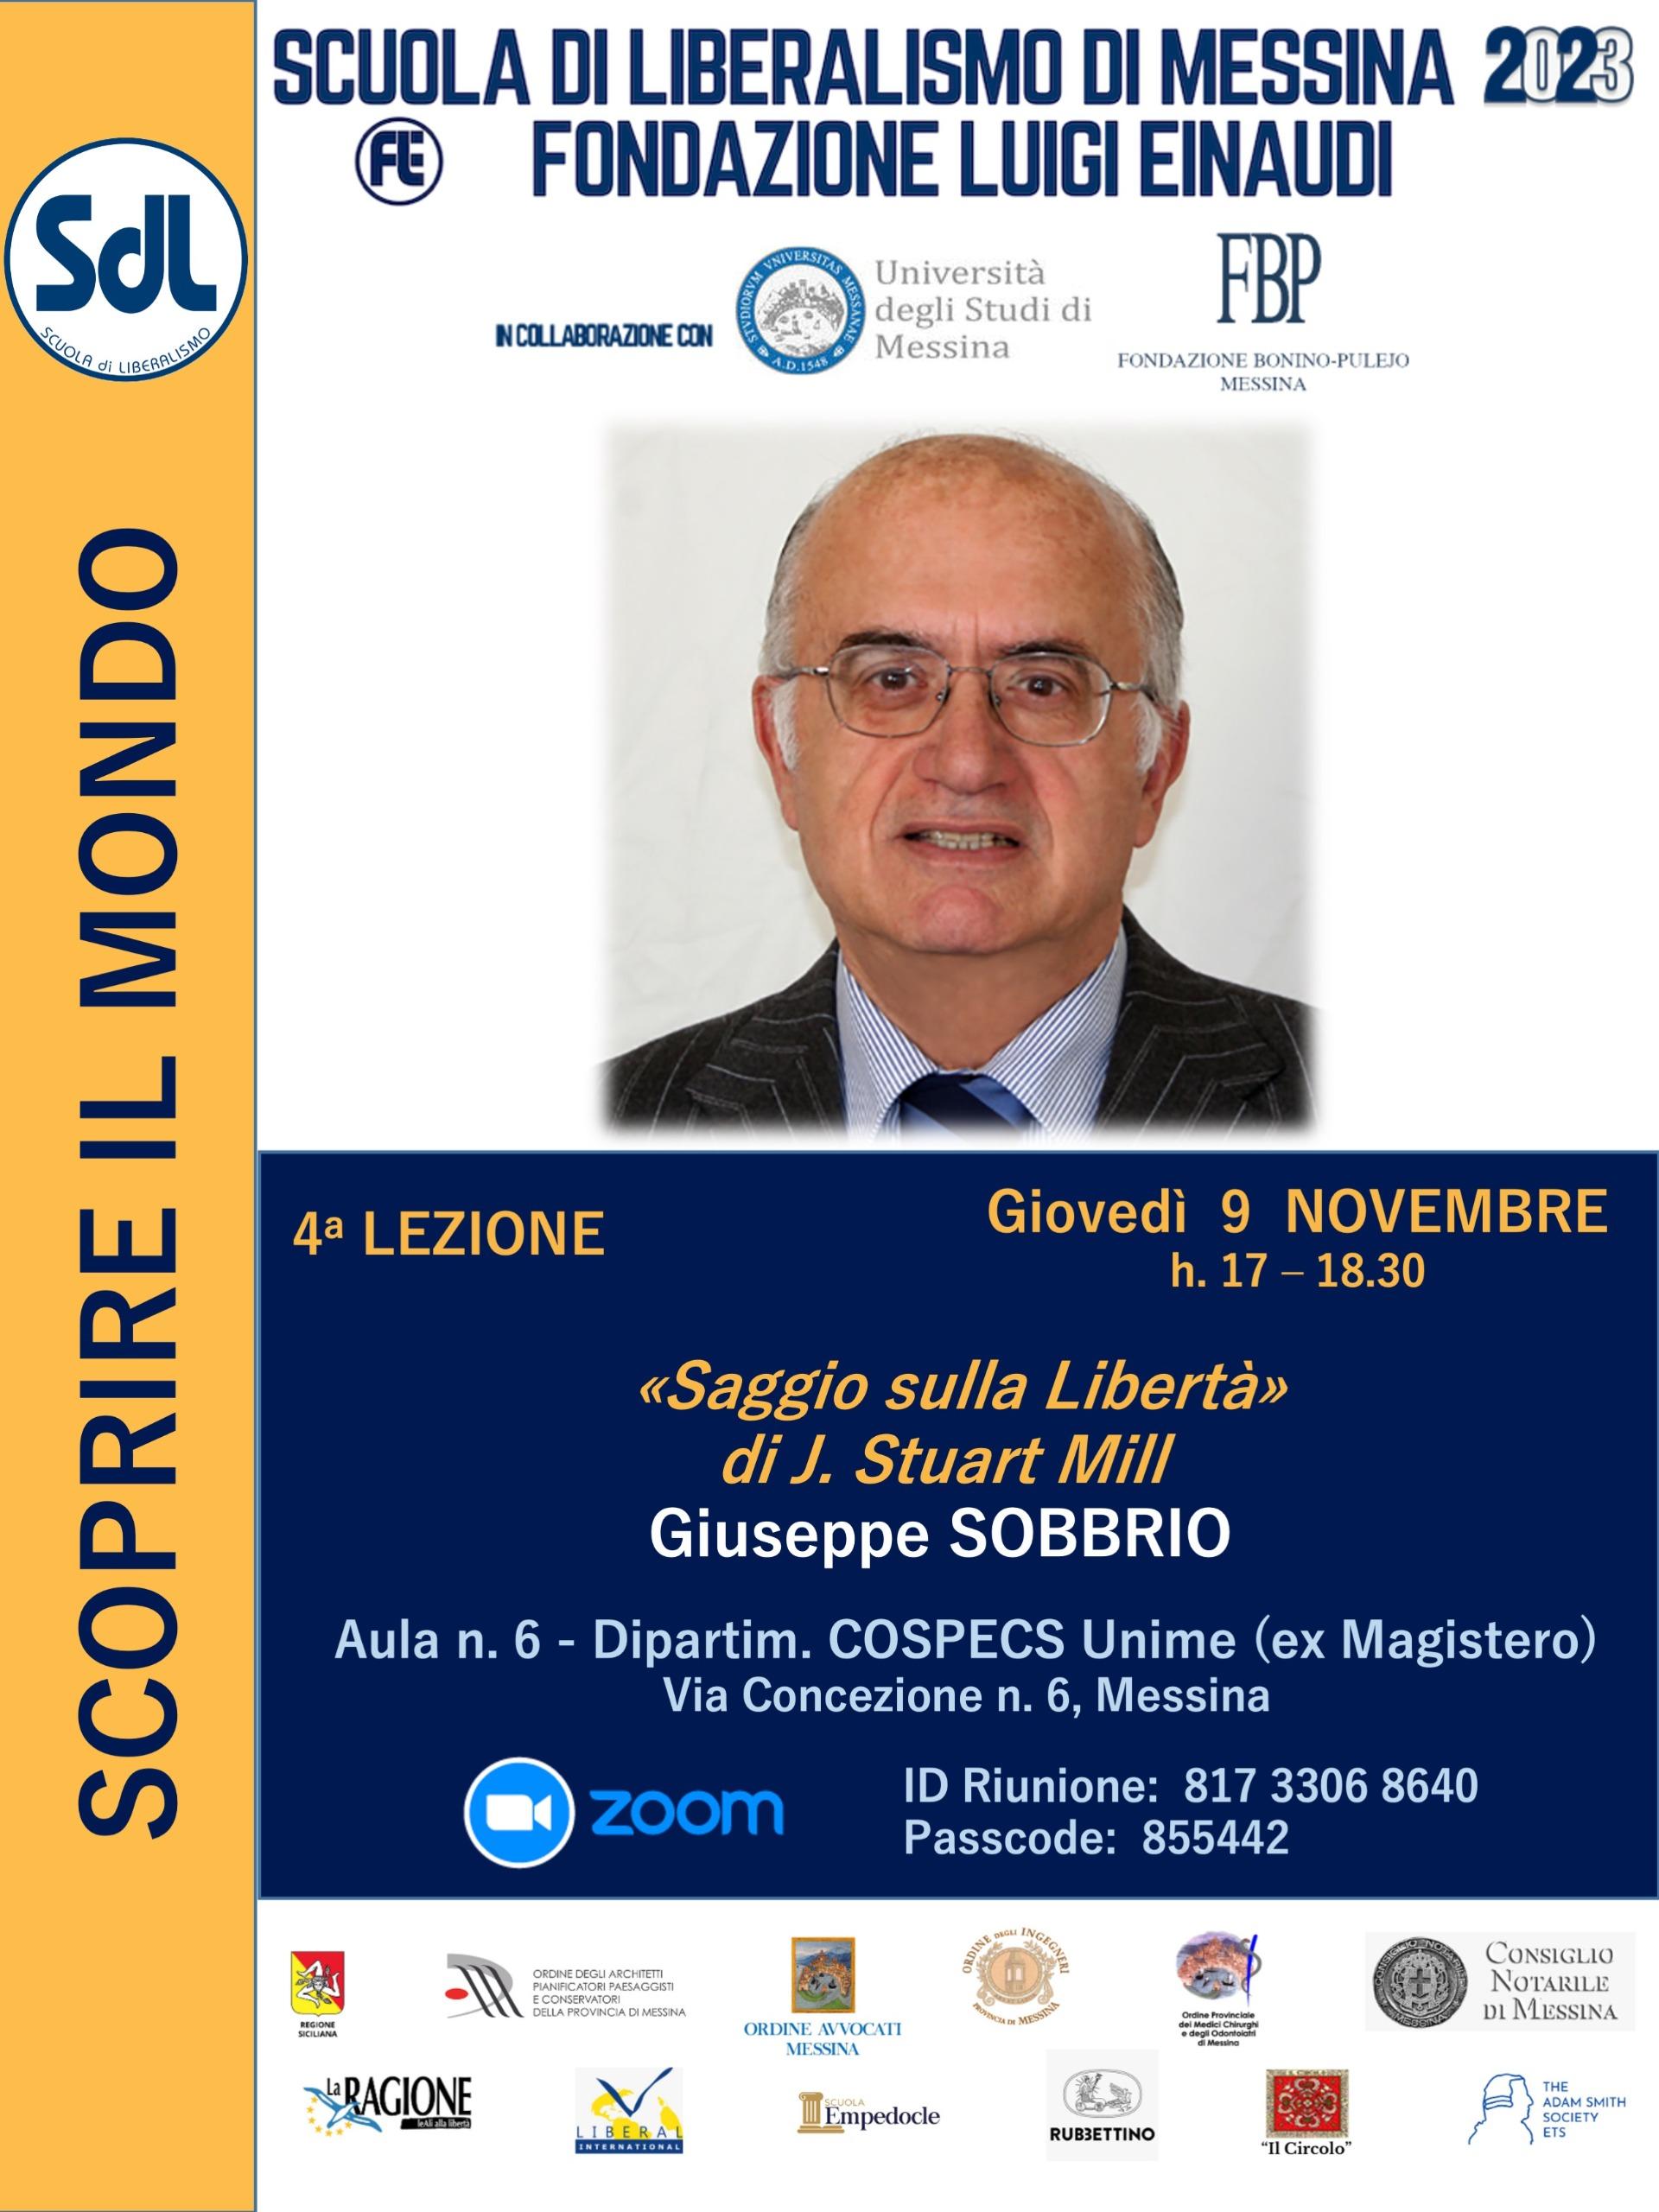 Scuola di Liberalismo 2023 – Messina: lezione del prof. Giuseppe Sobbrio sul tema “Saggio sulla Libertà”